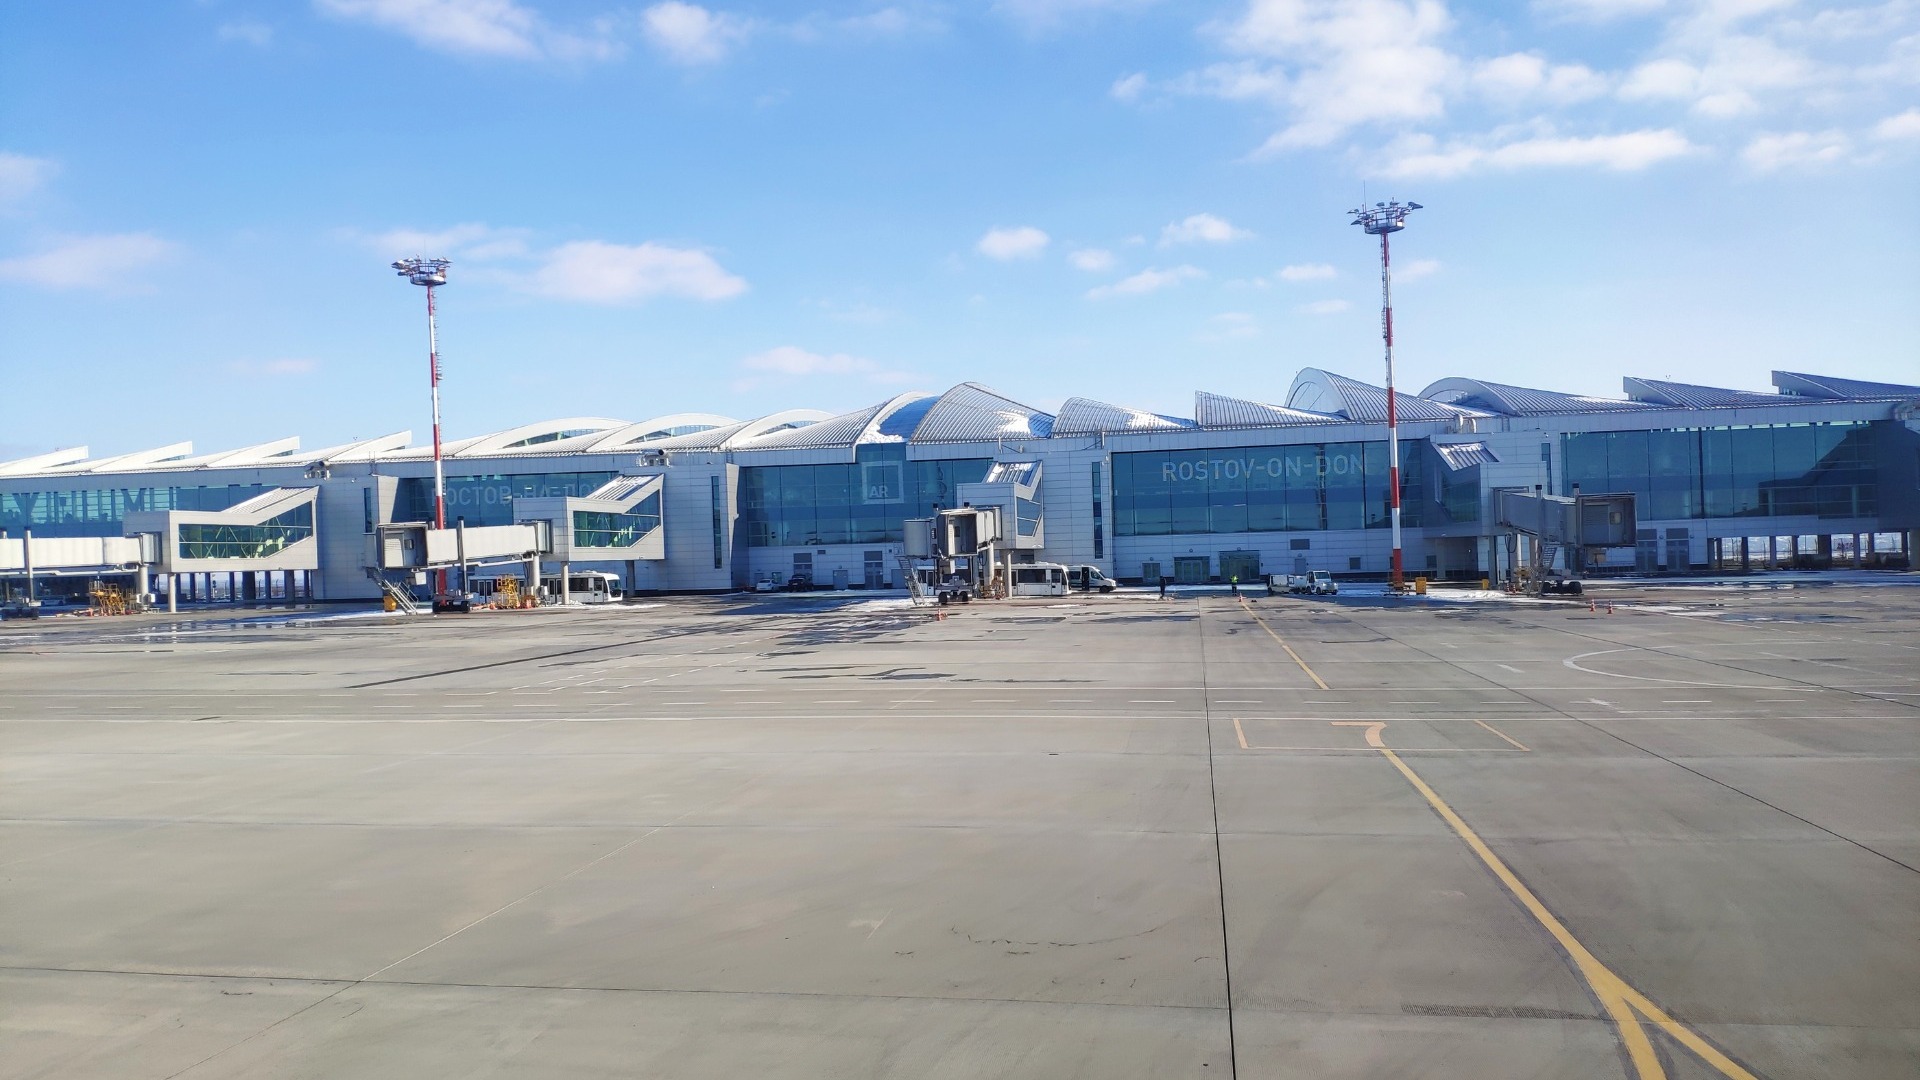 Правительство выделило 2,6 млрд руб на поддержку закрытого аэропорта Платов в Ростове